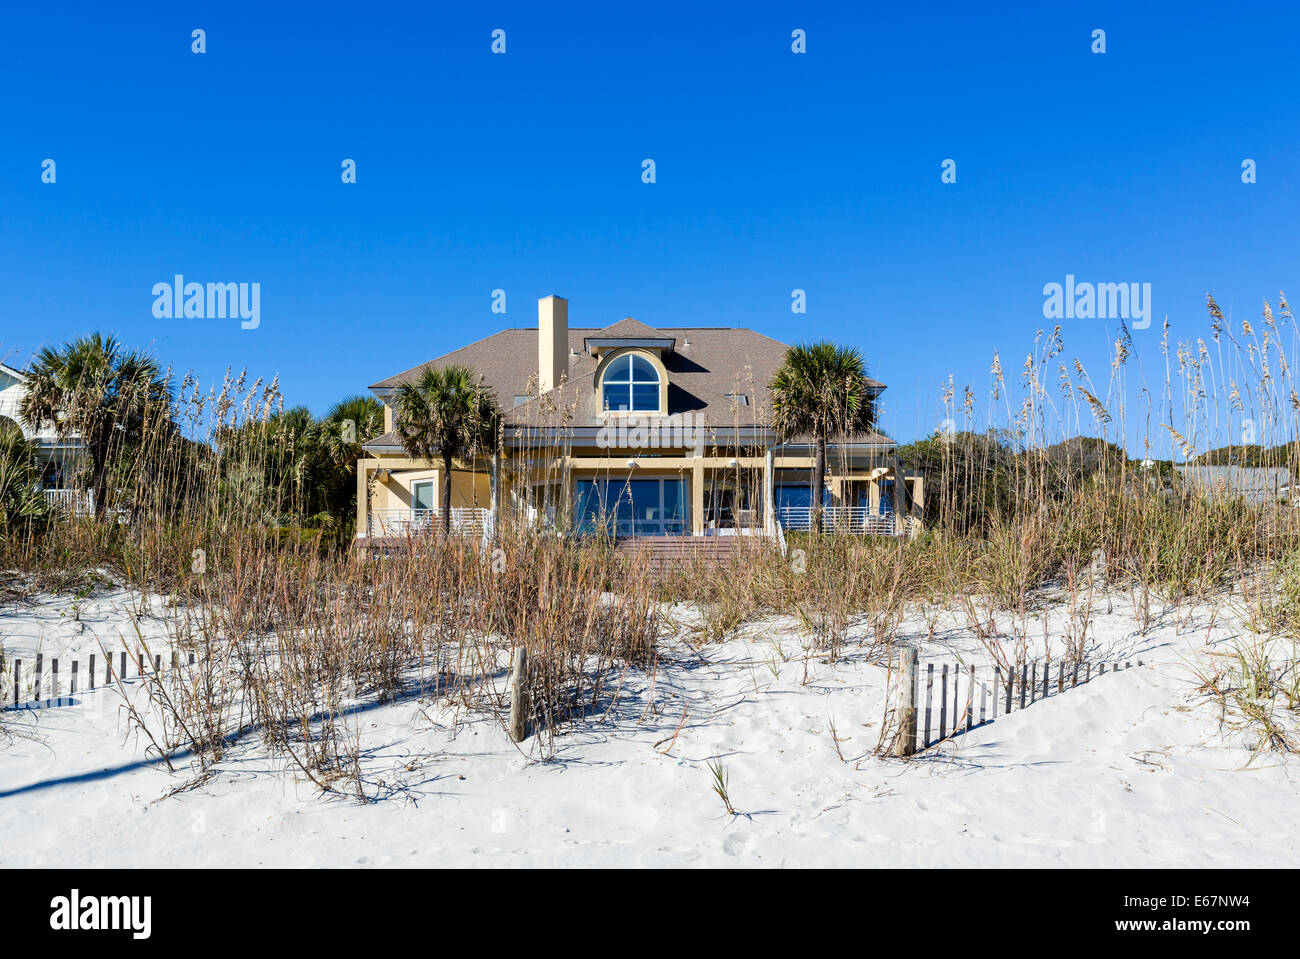 Típica casa de playa en el extremo norte de Myrtle Beach, Carolina del Sur, EE.UU. Foto de stock